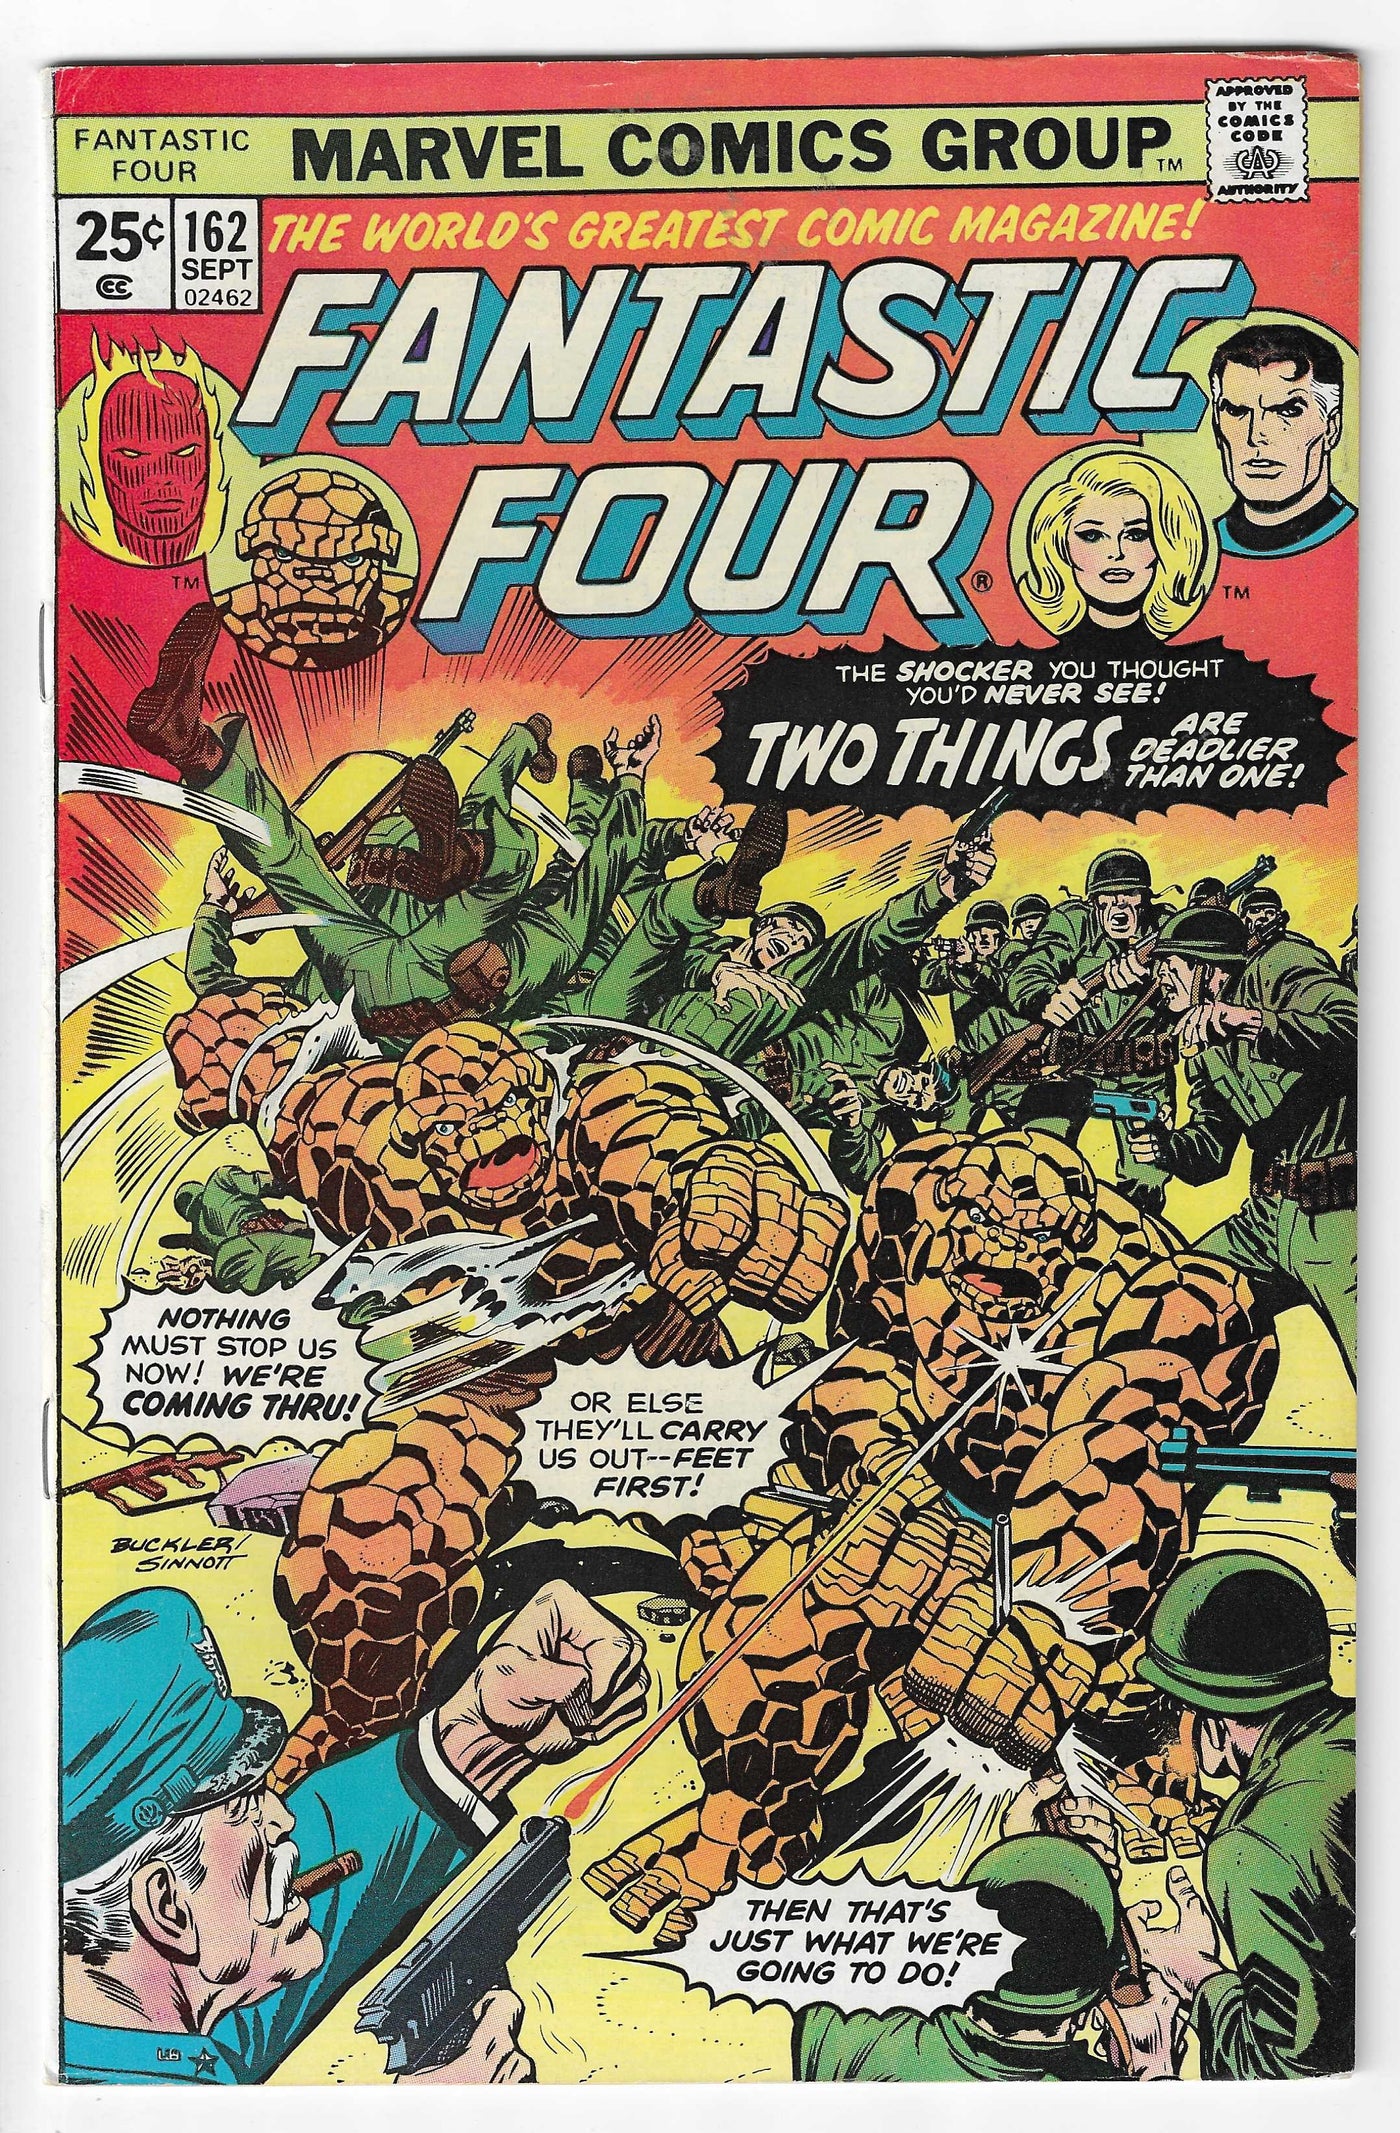 Fantastic Four (Volume 1) #162